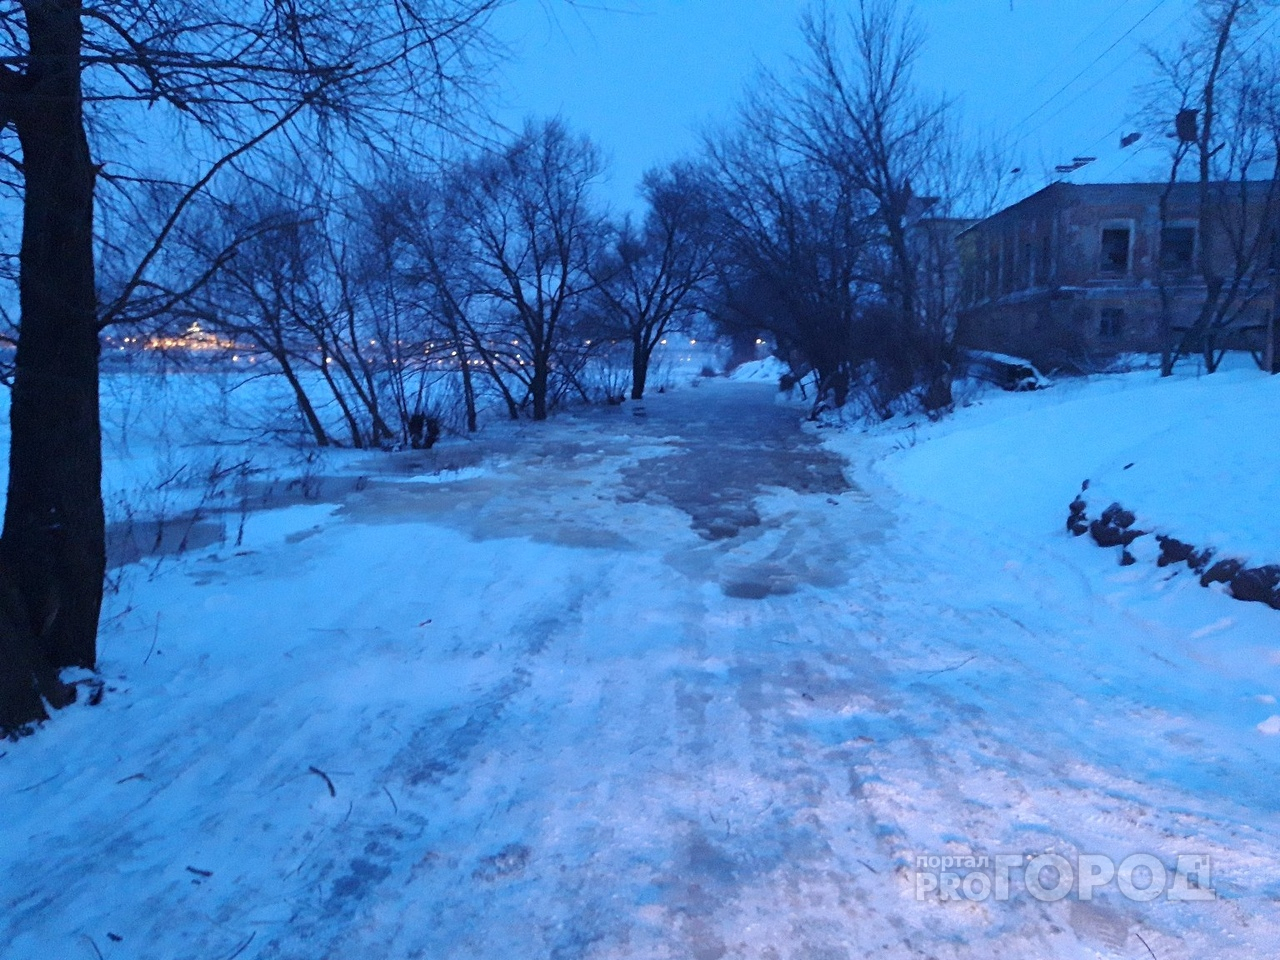 "Нам страшно": жители набережной паникуют из-за большой воды в Ярославле. Видео